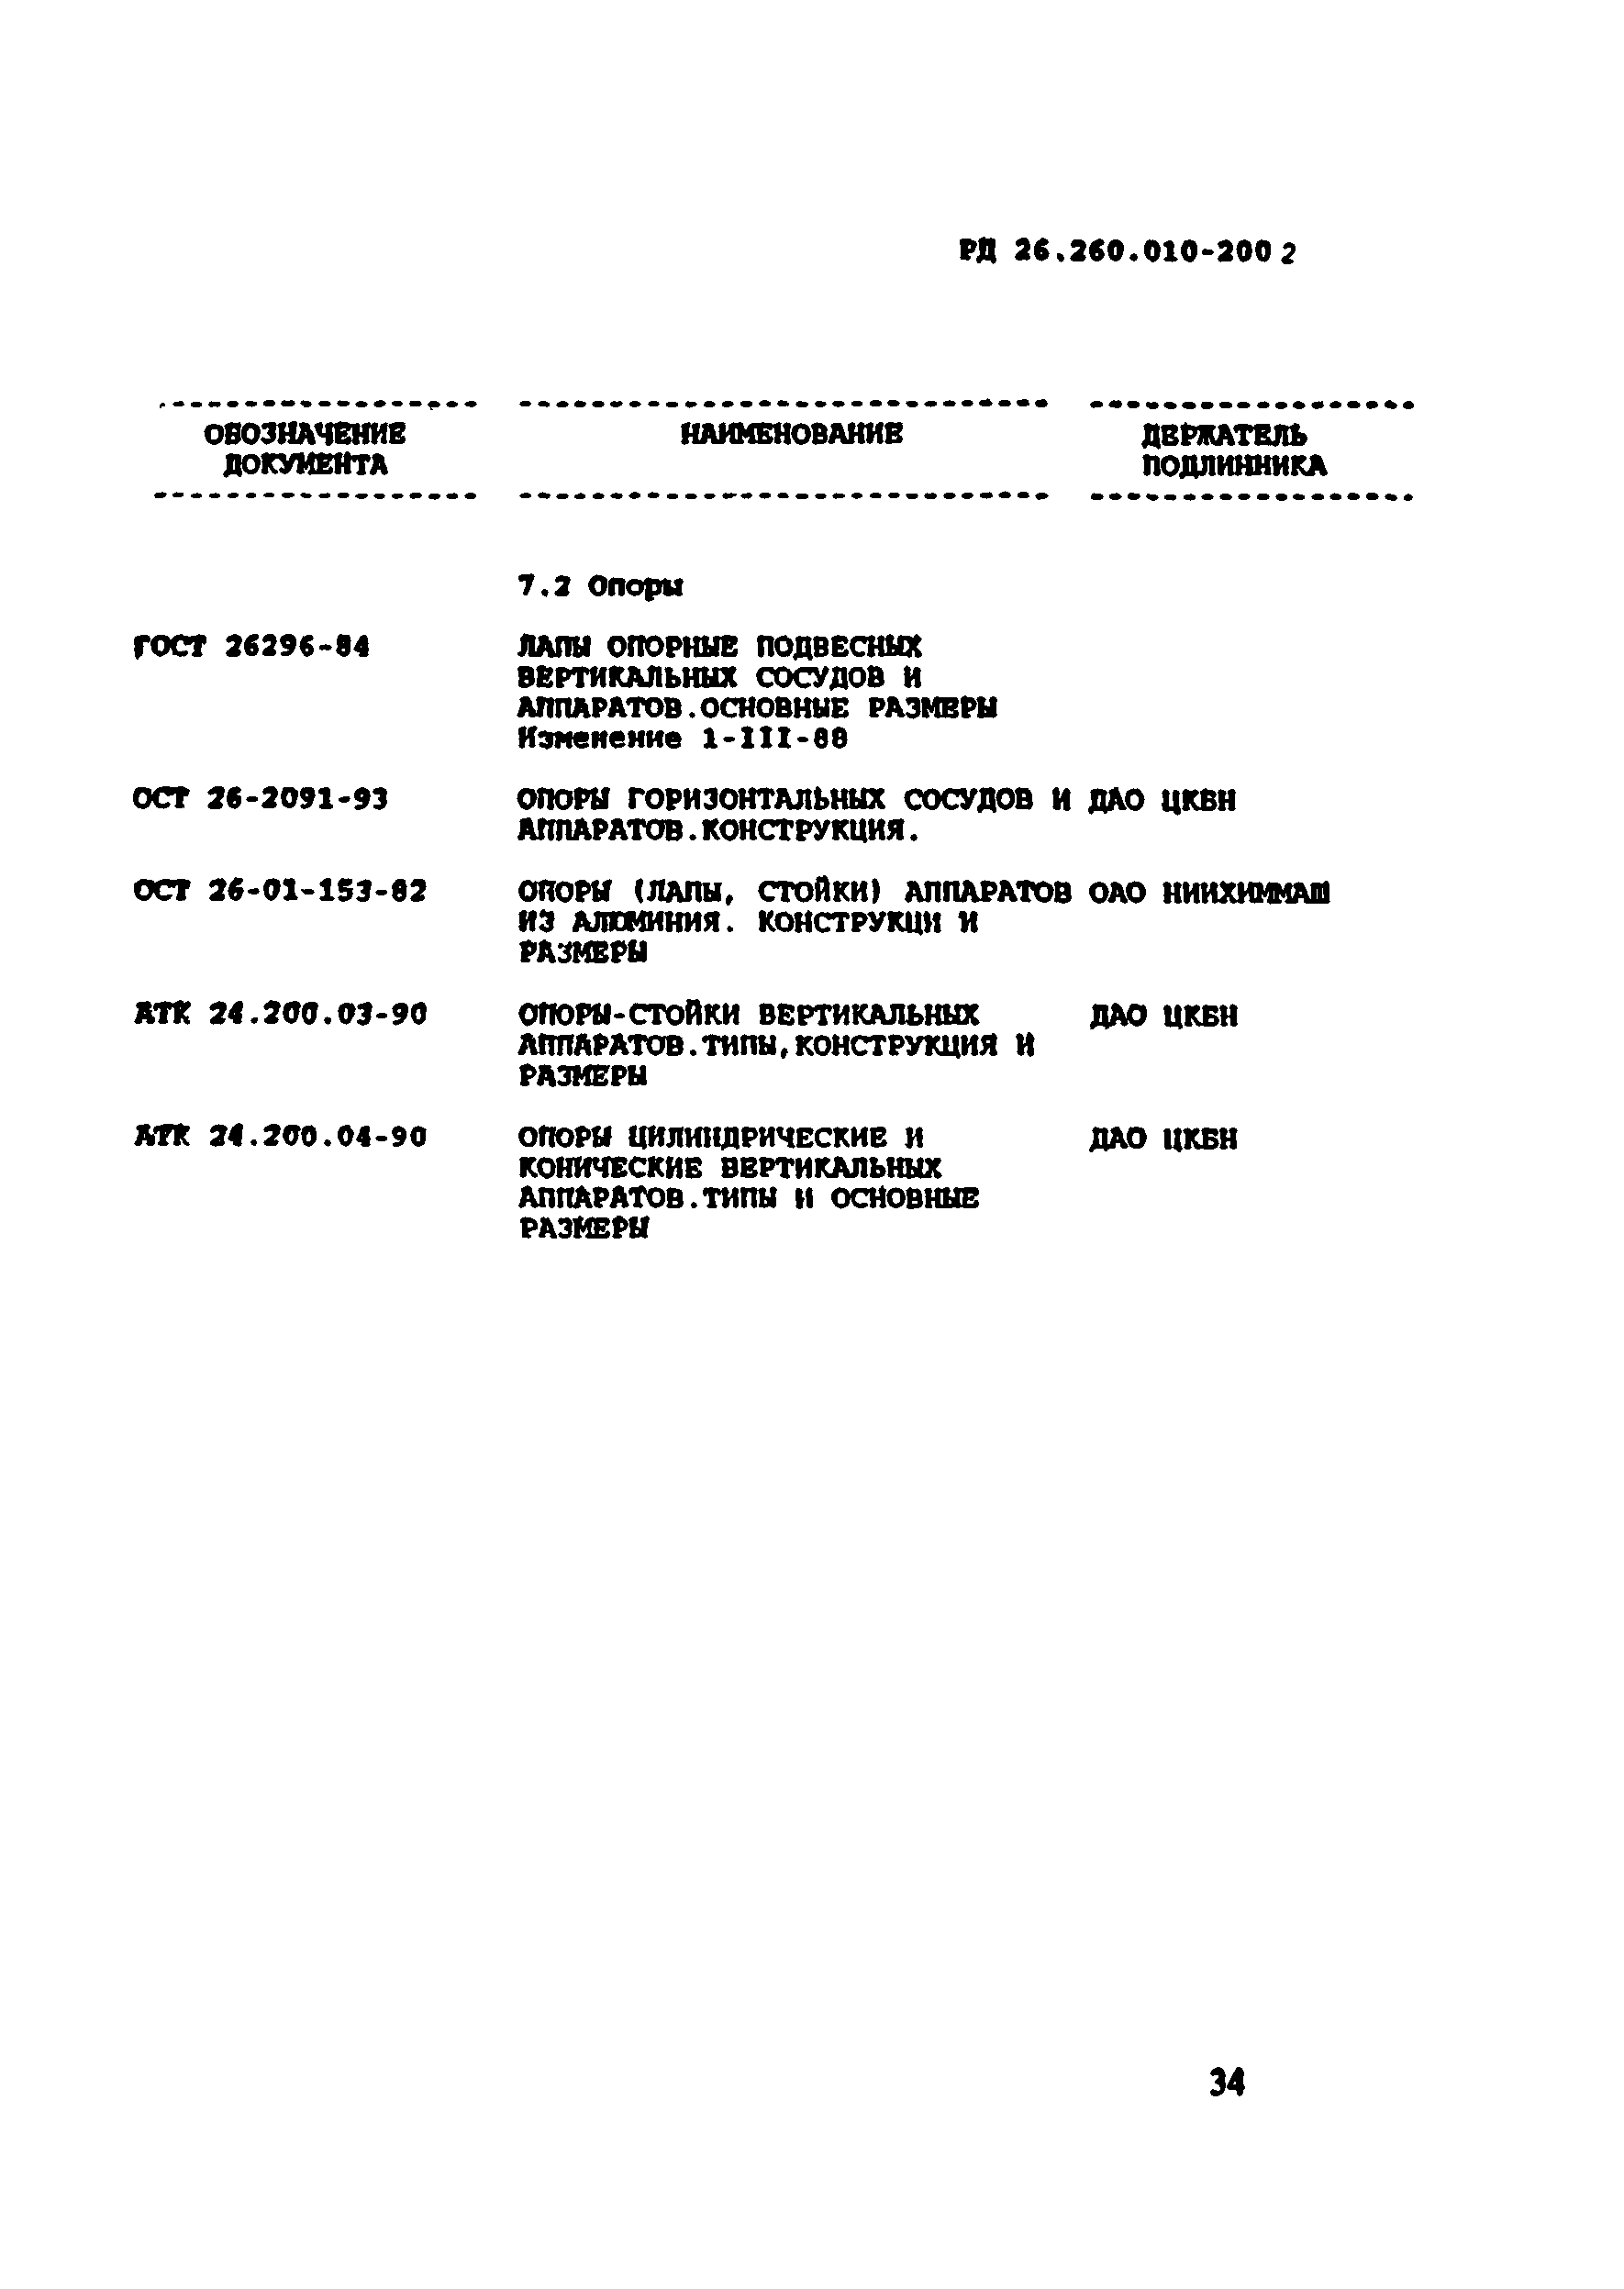 РД 26.260.010-2002